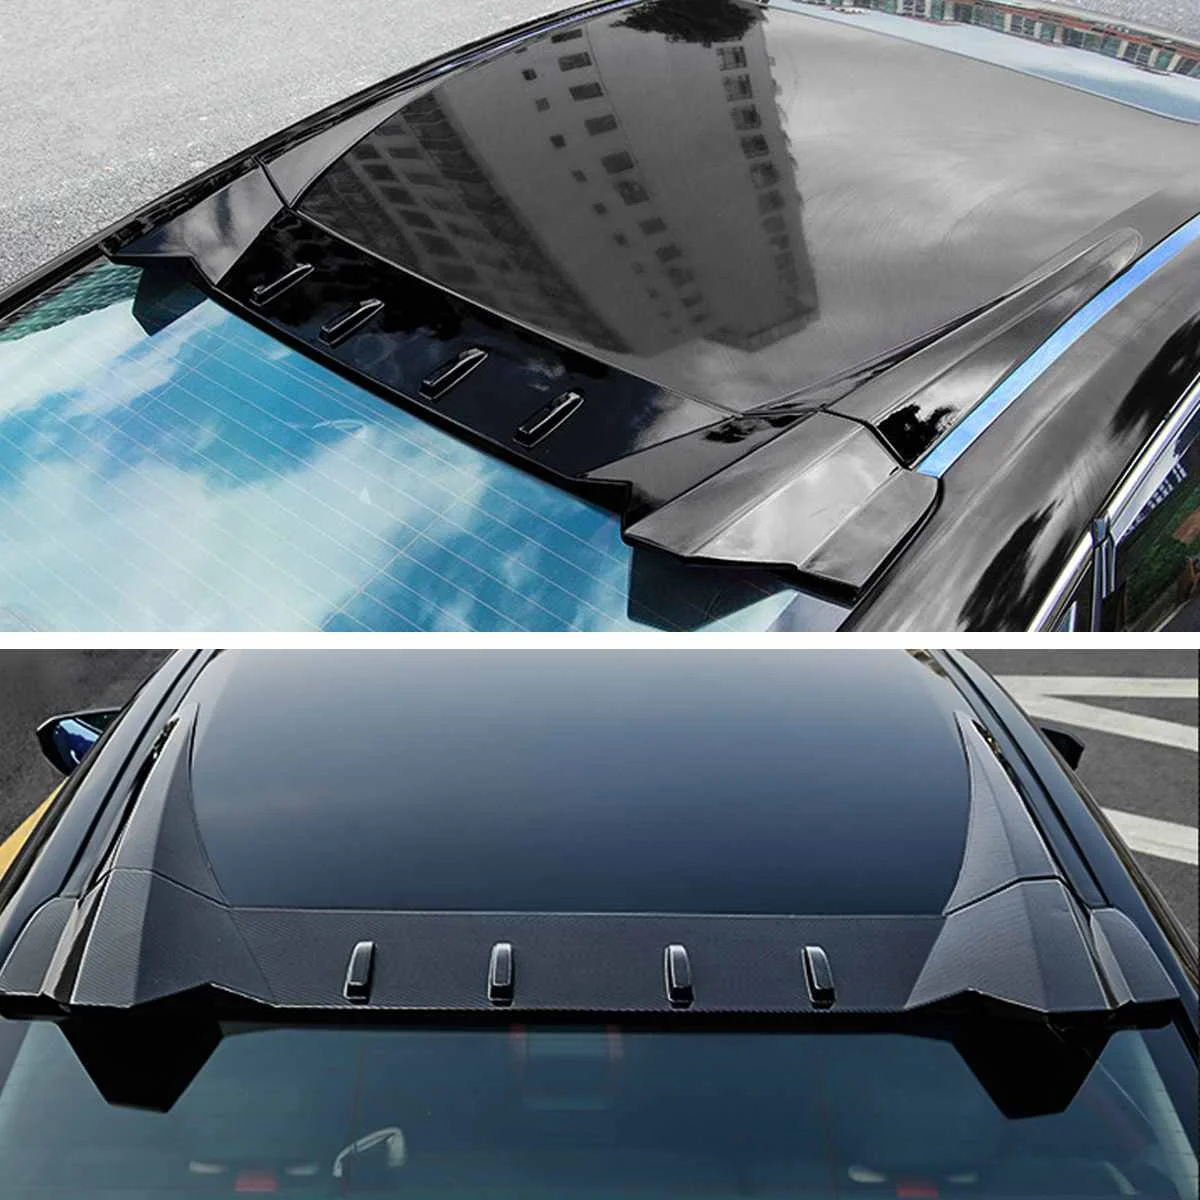 R Стиль багажник автомобиля задний спойлер на крышу крыло для 10th Gen для Honda Для Civic седан заднее окно на крышу спортивный спойлер